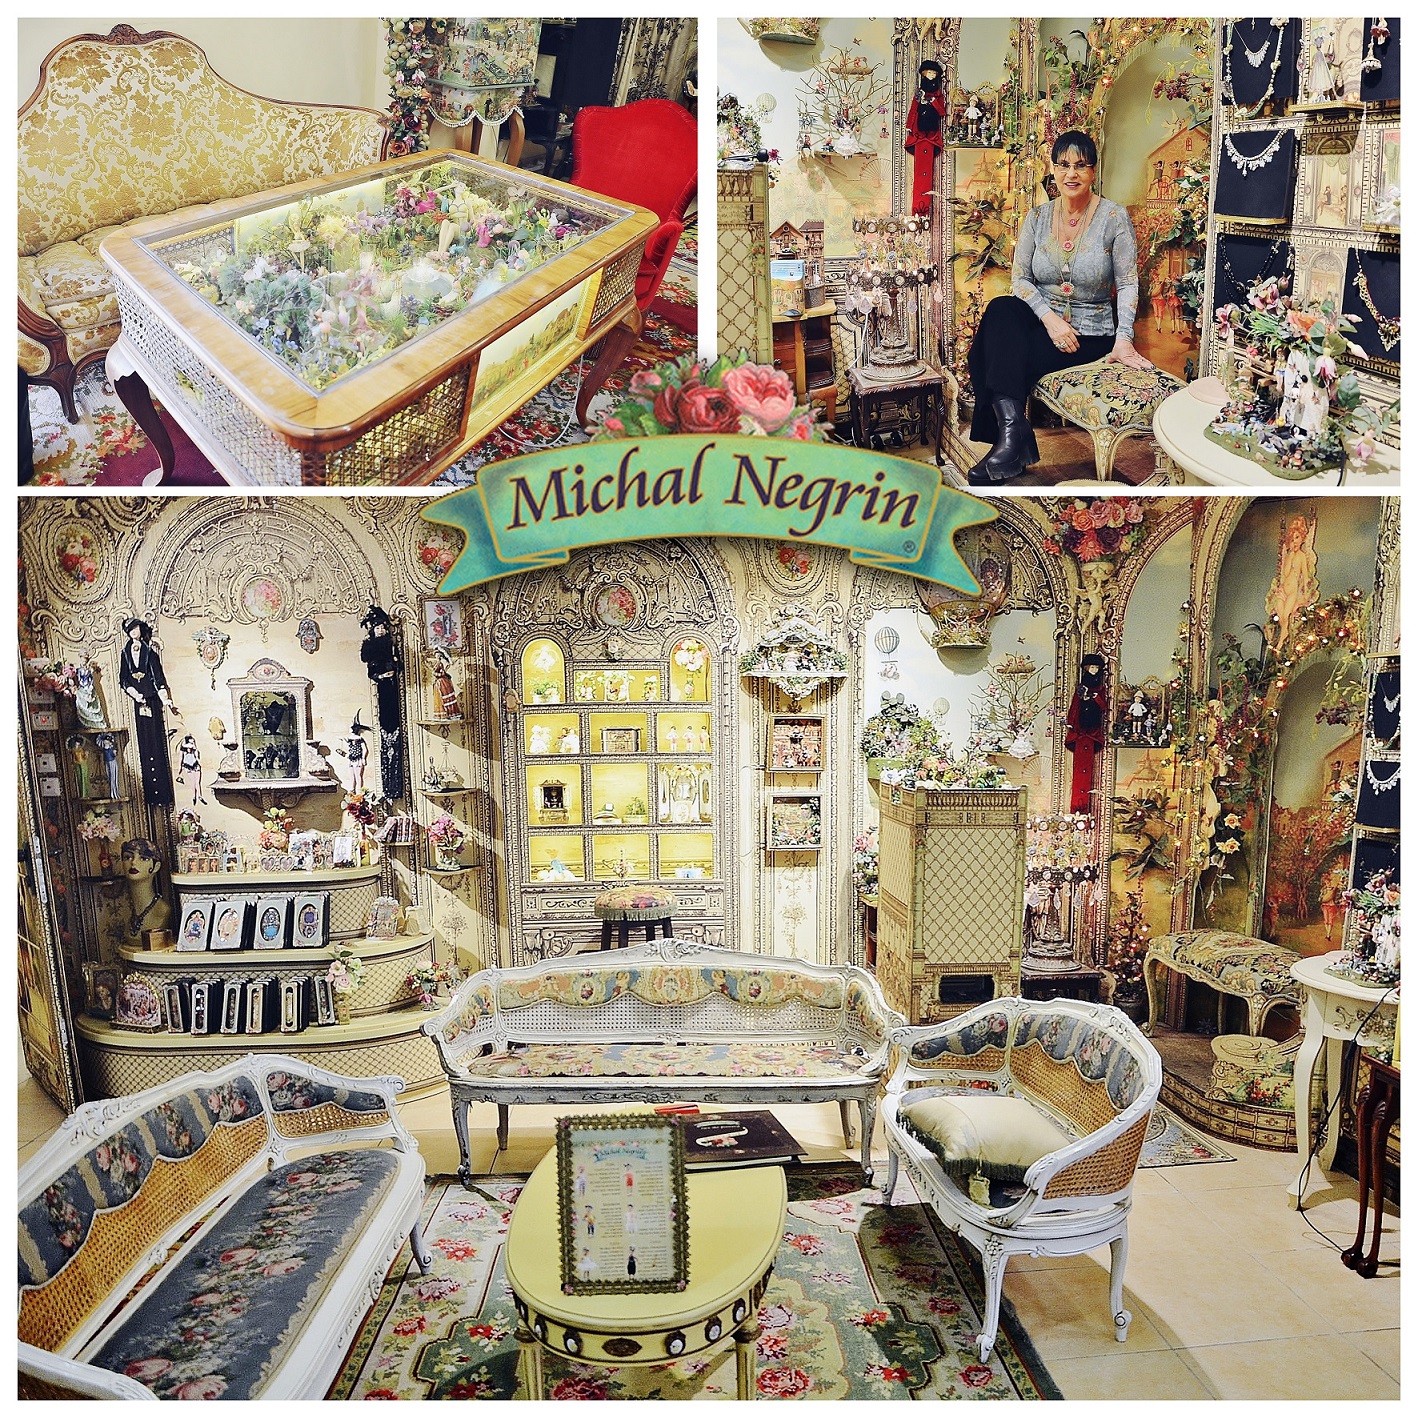 17 ноября в Бат-Яме! День клиента в галерее Michal Negrin, 25% скидки, угощение и встреча с Михаль.